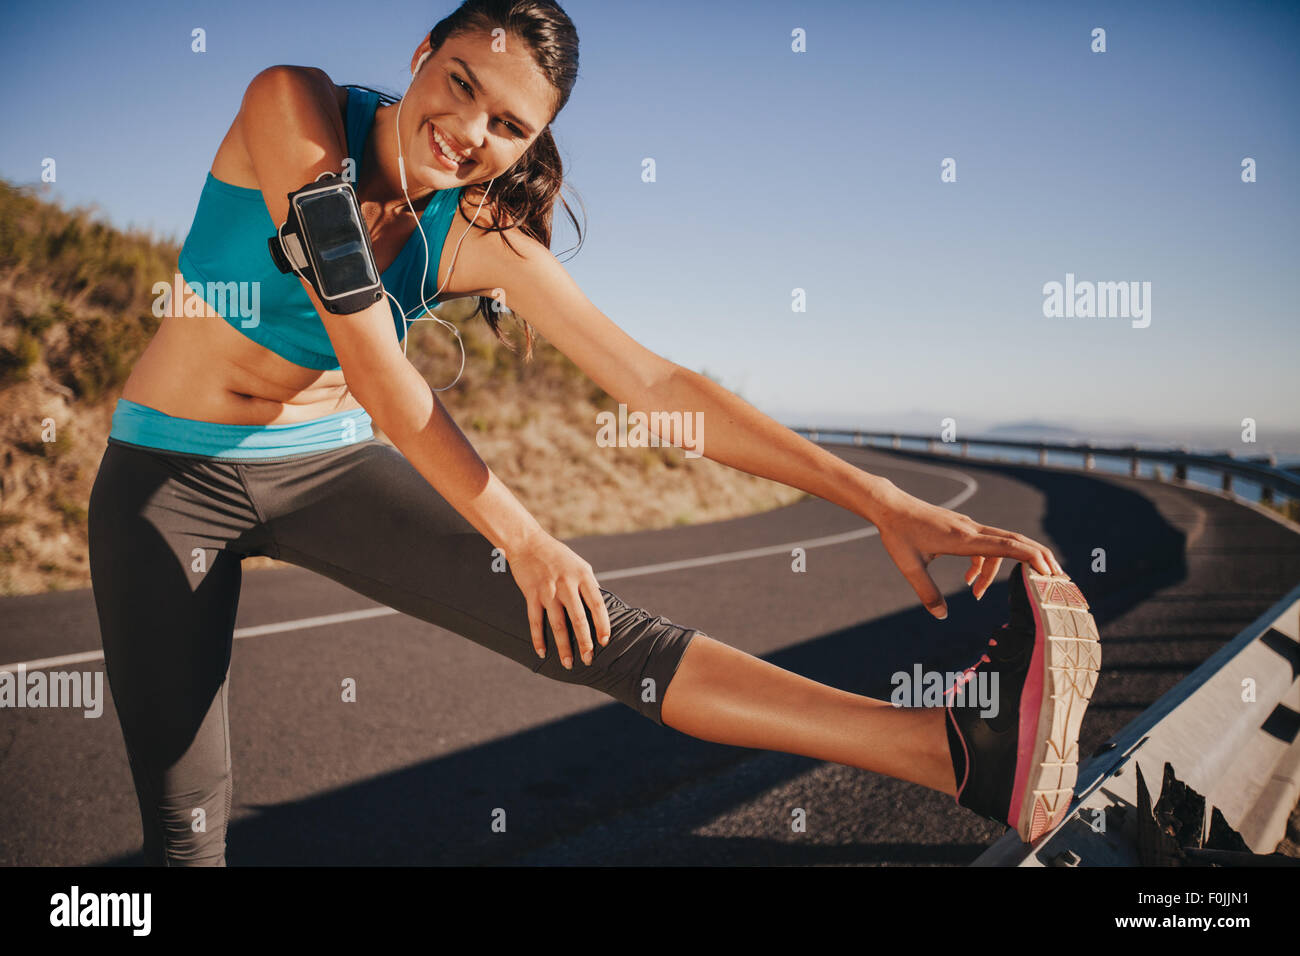 Athlète féminin s'étend ses jambes avant d'exécuter en plein air. Jeune femme fit l'échauffement pour une course sur route de campagne. Banque D'Images